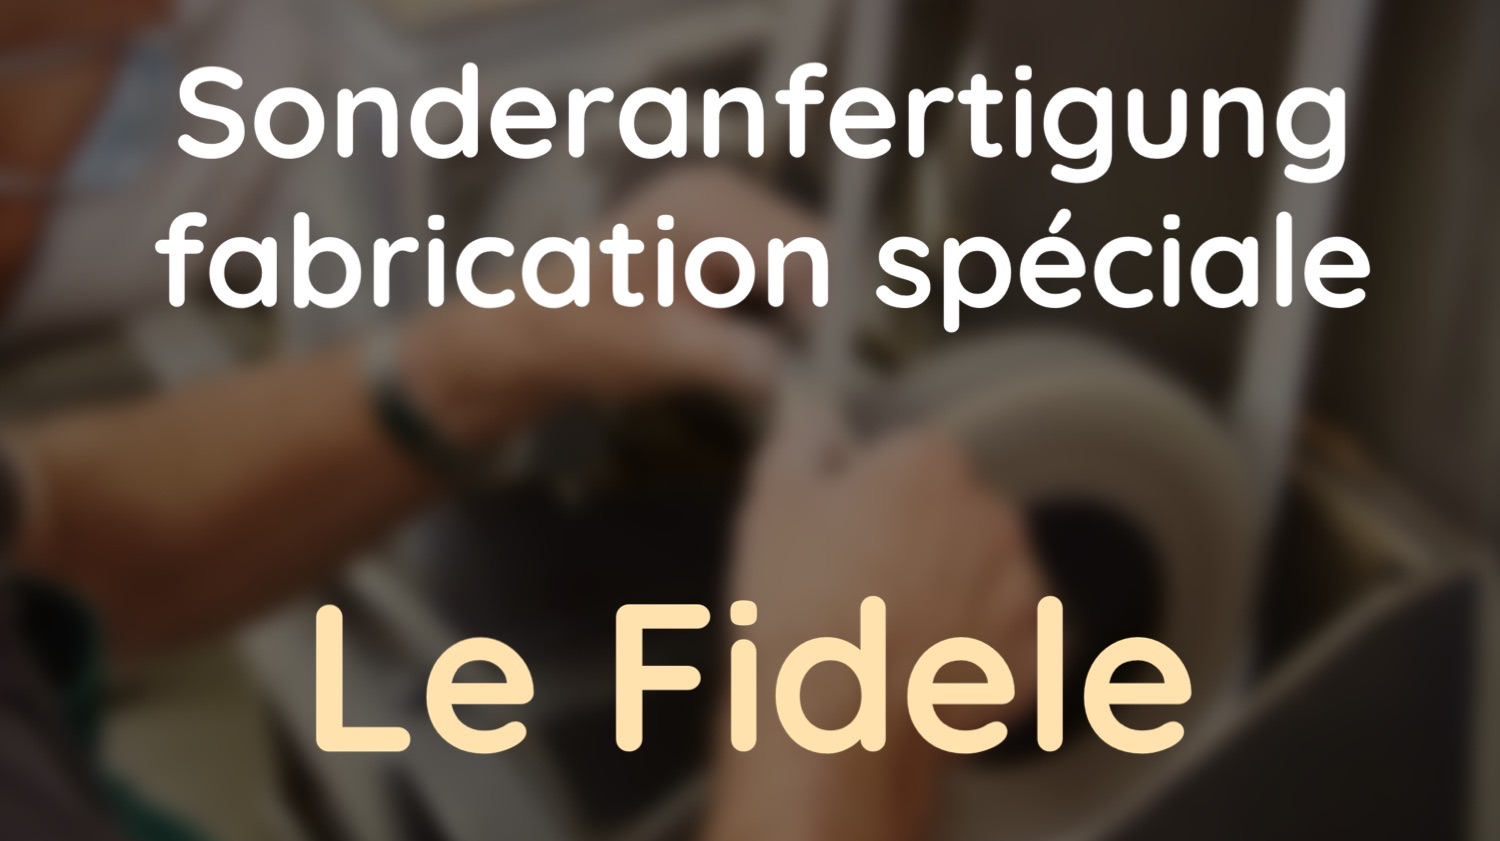 Original laguiole - Speziell auf Kundenwunsch angefertigtes Messer von Le Fidele